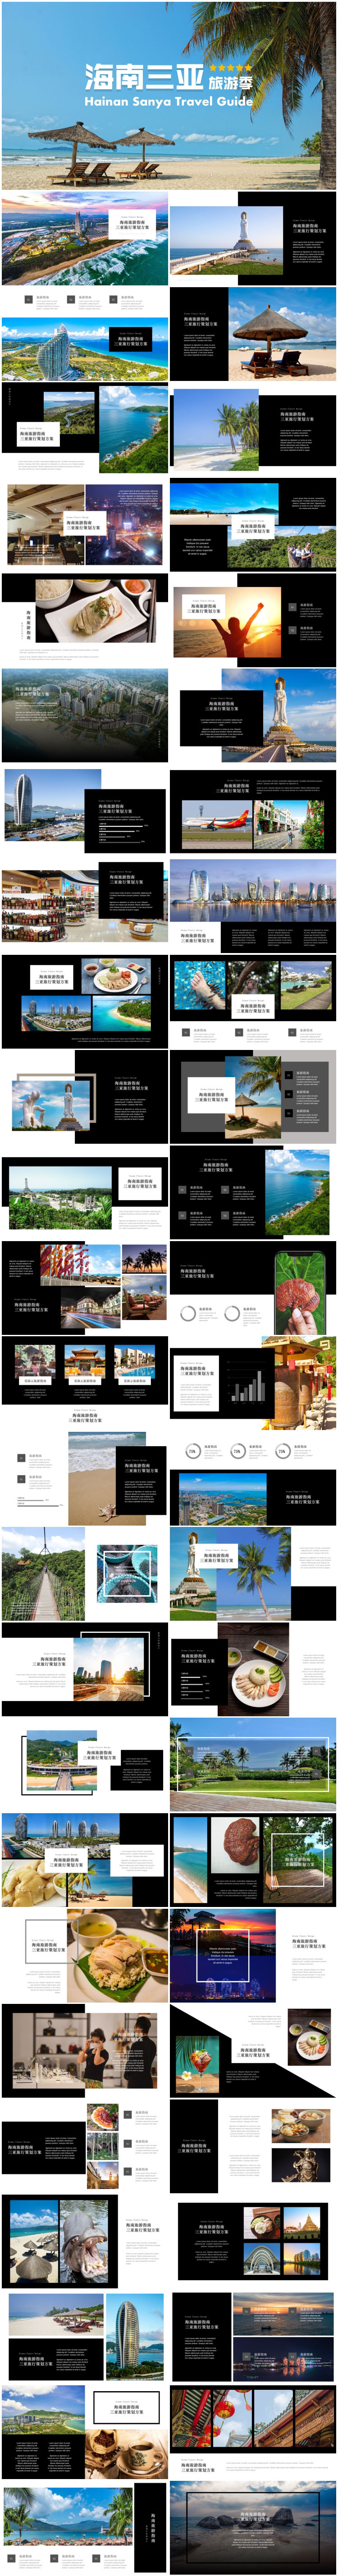 海南三亚旅游keynote模板